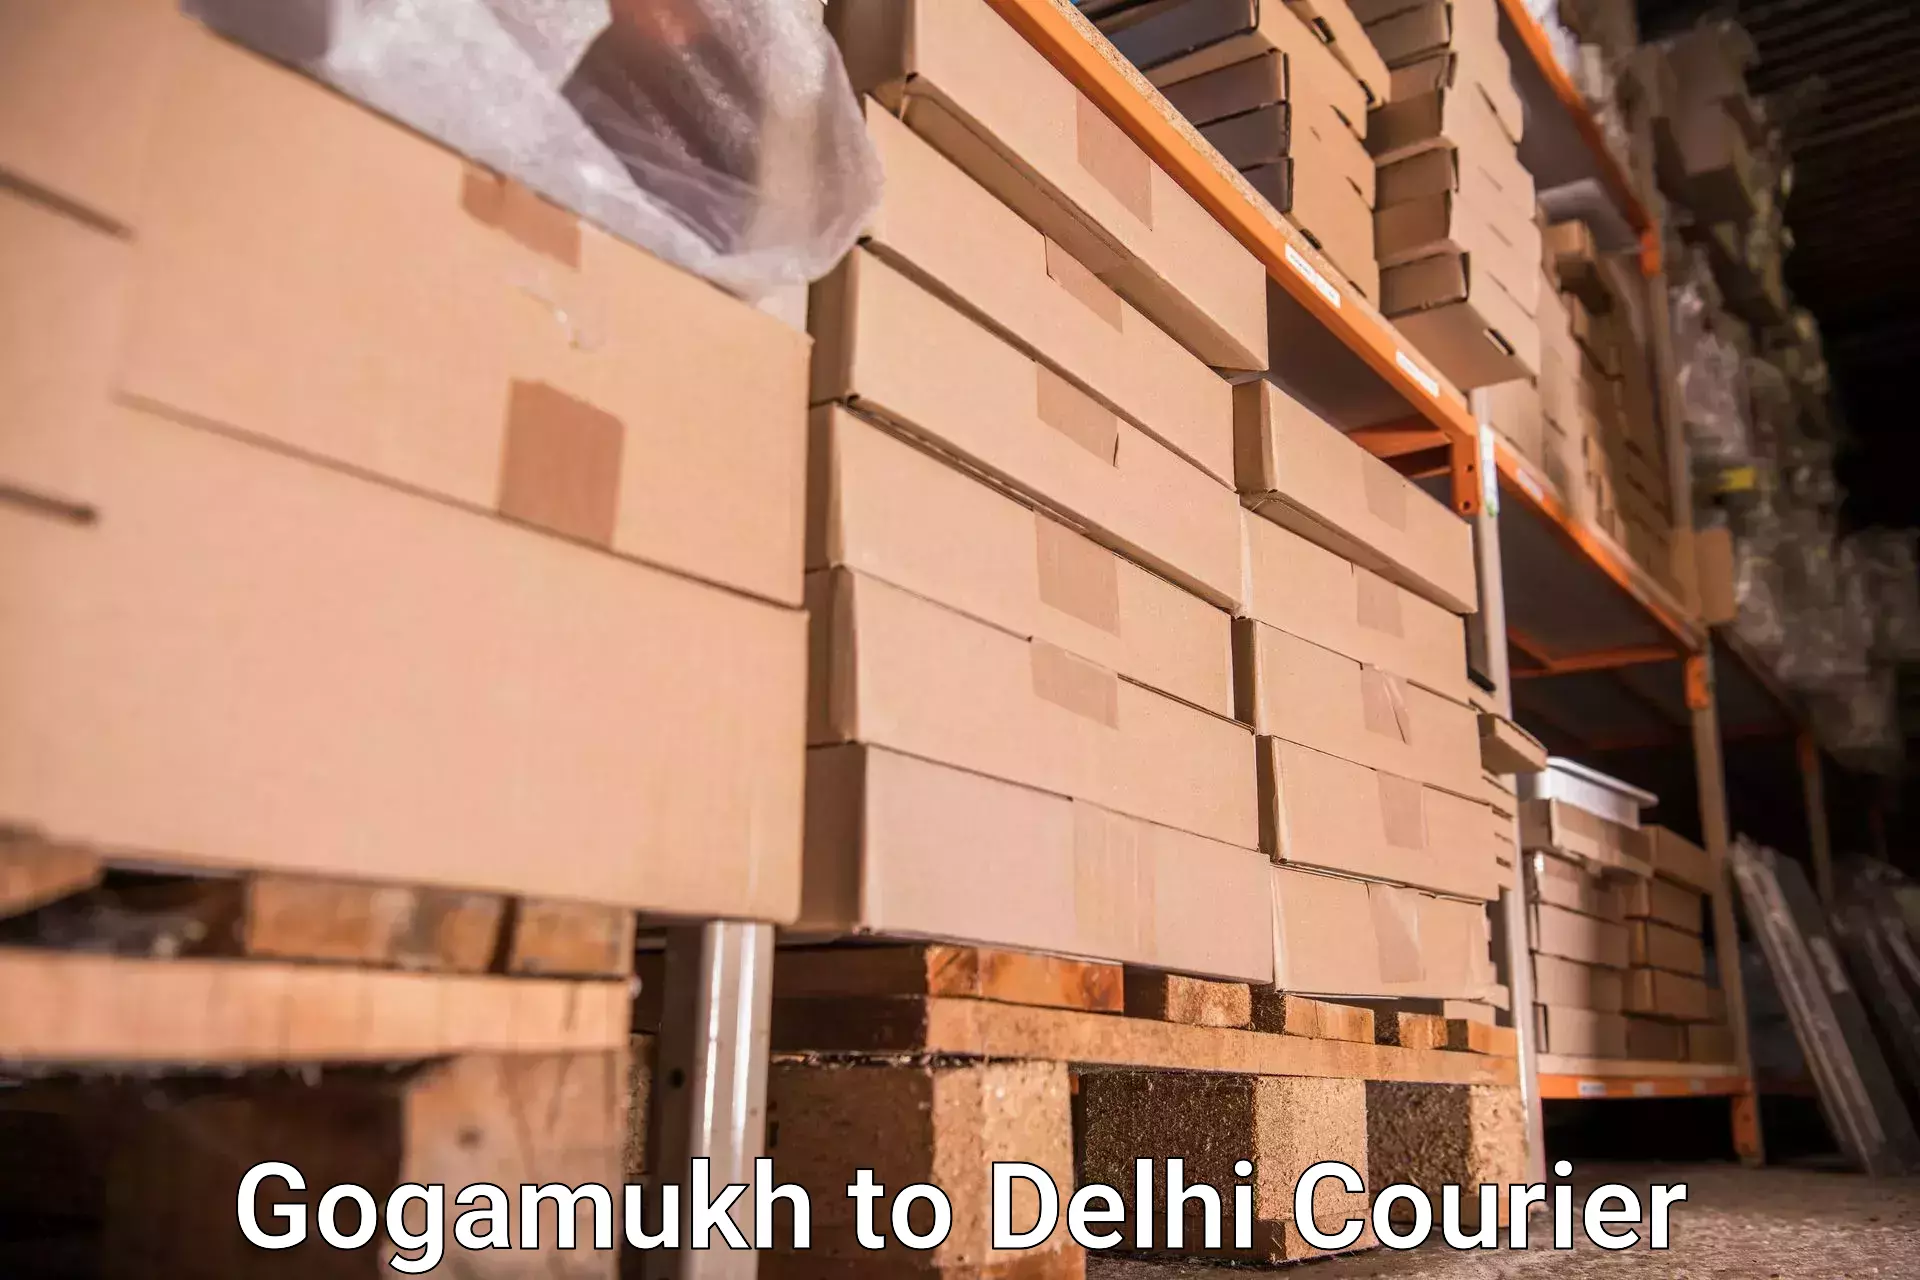 Luggage forwarding service Gogamukh to Sarojini Nagar